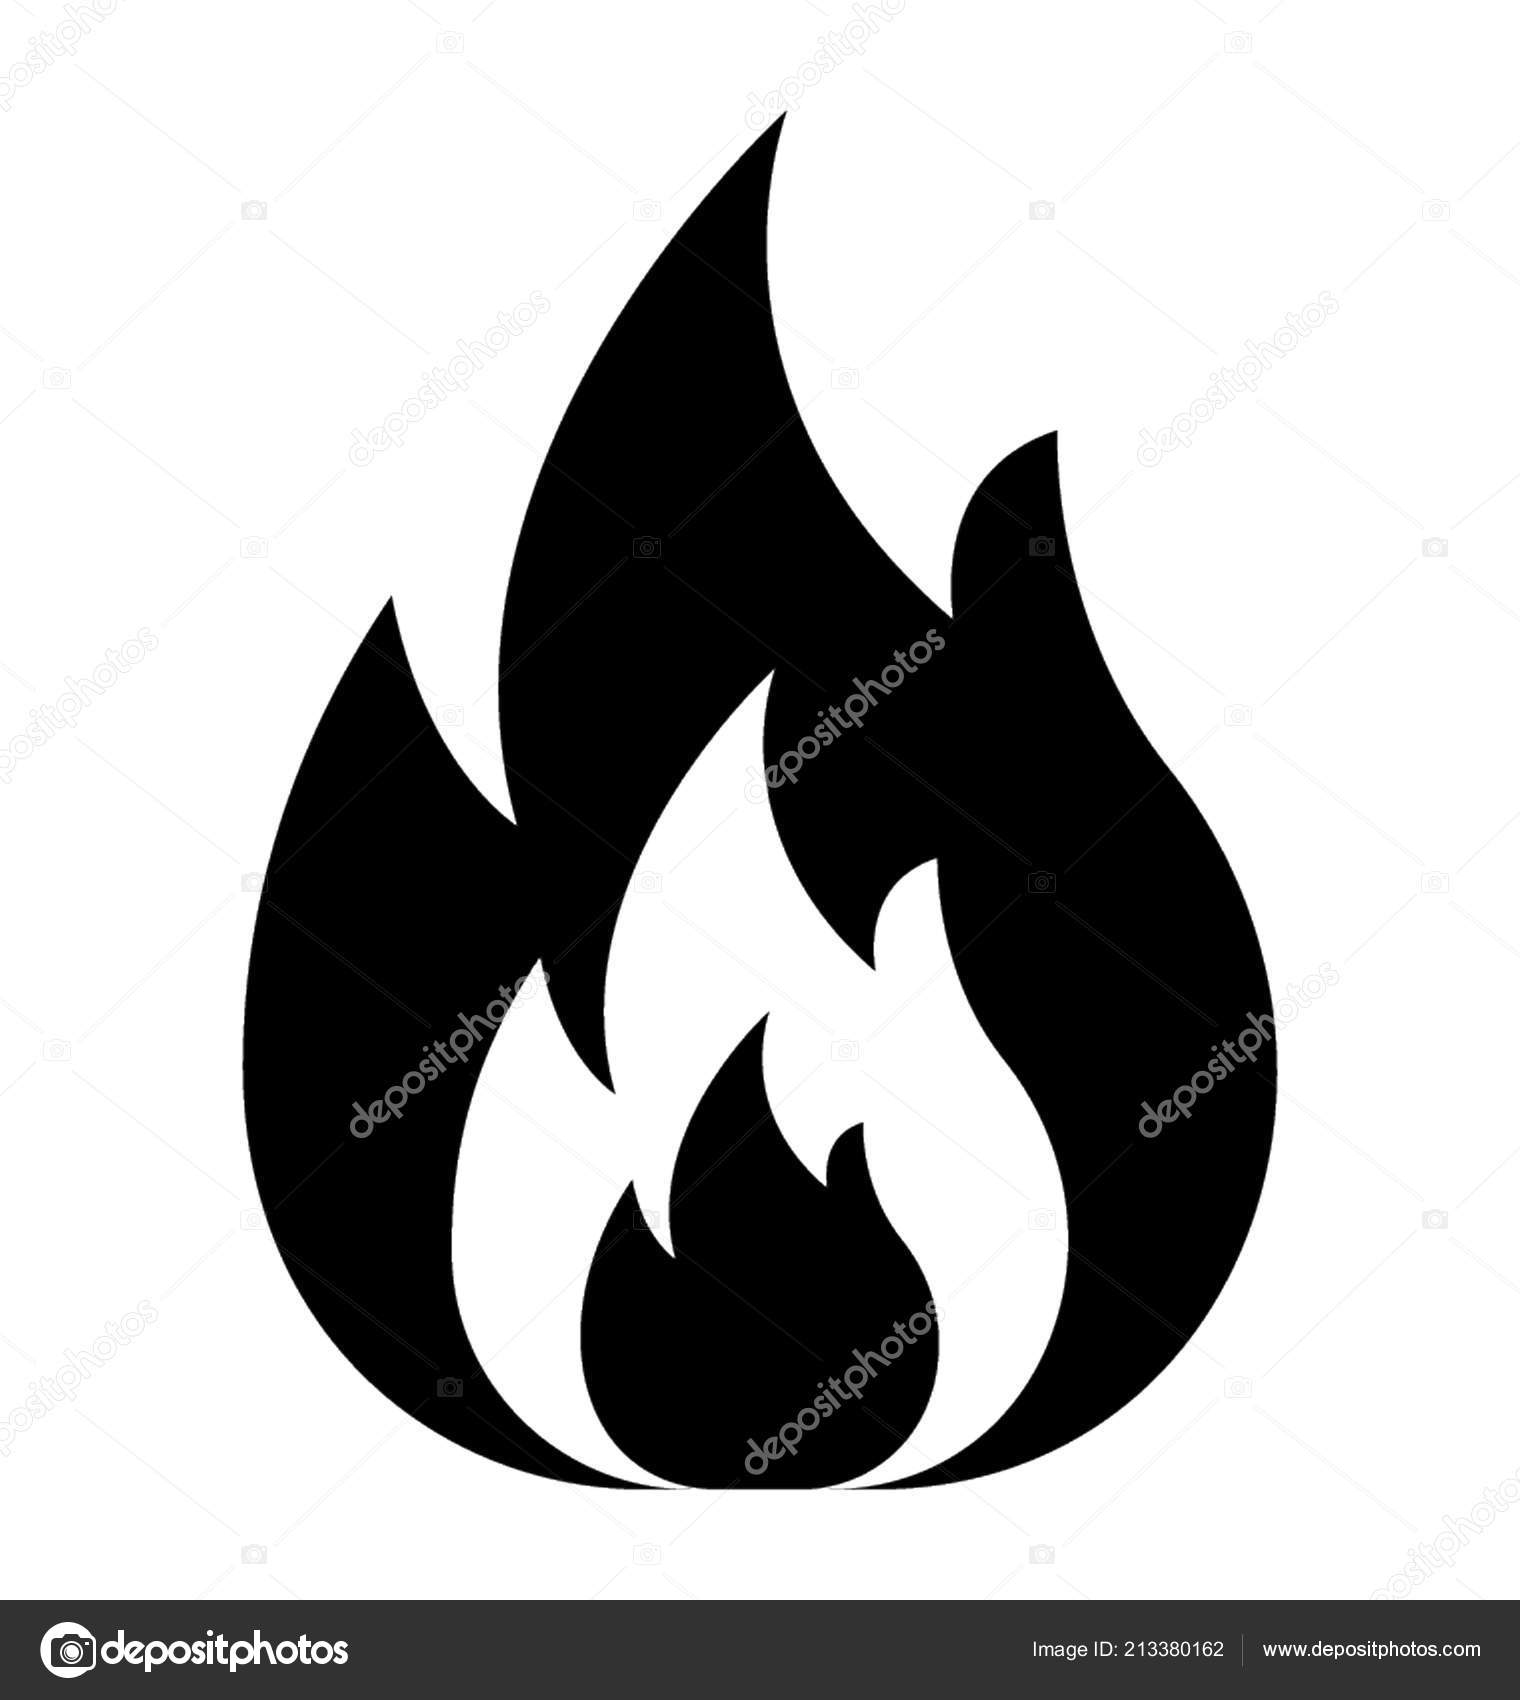 Design de ícone de vetor de chama de fogo